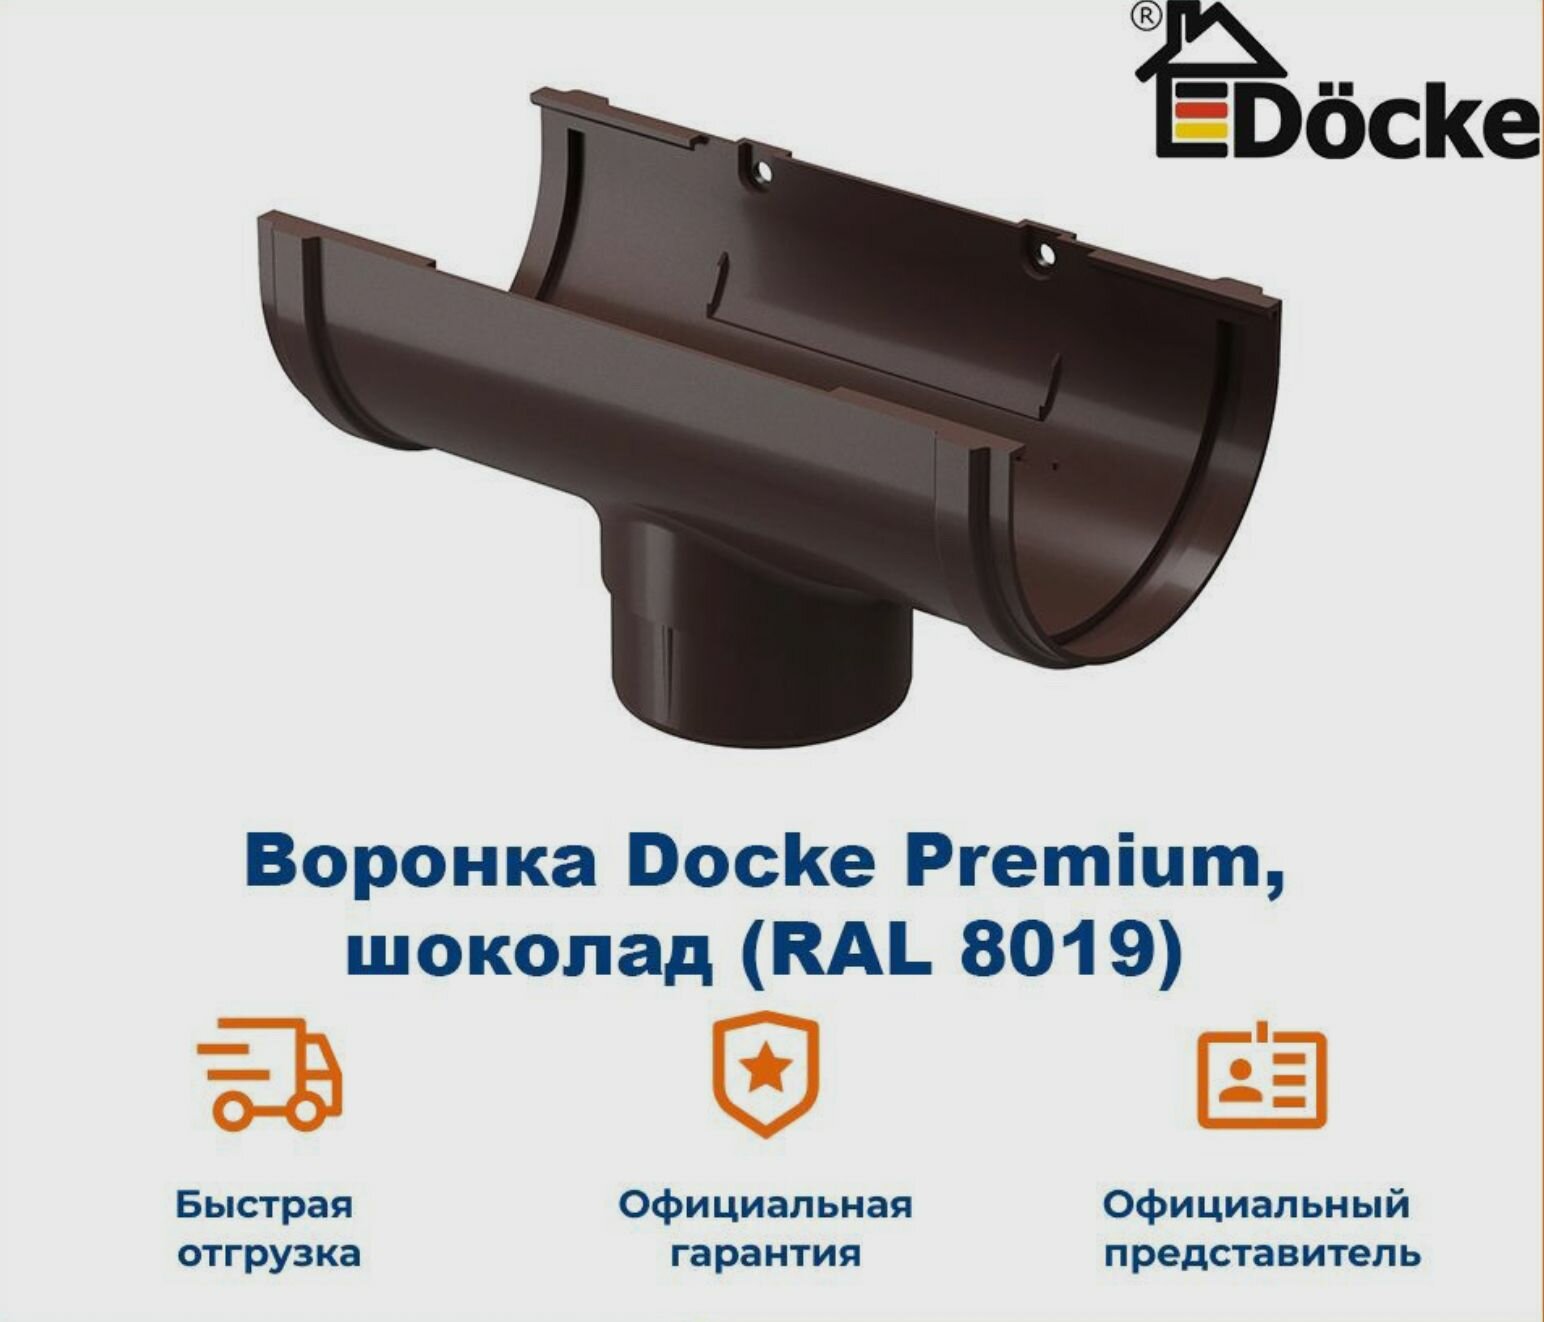 Воронка водосточная Docke Premium, шоколад (RAL 8019) / Воронка для водостока Деке Премиум